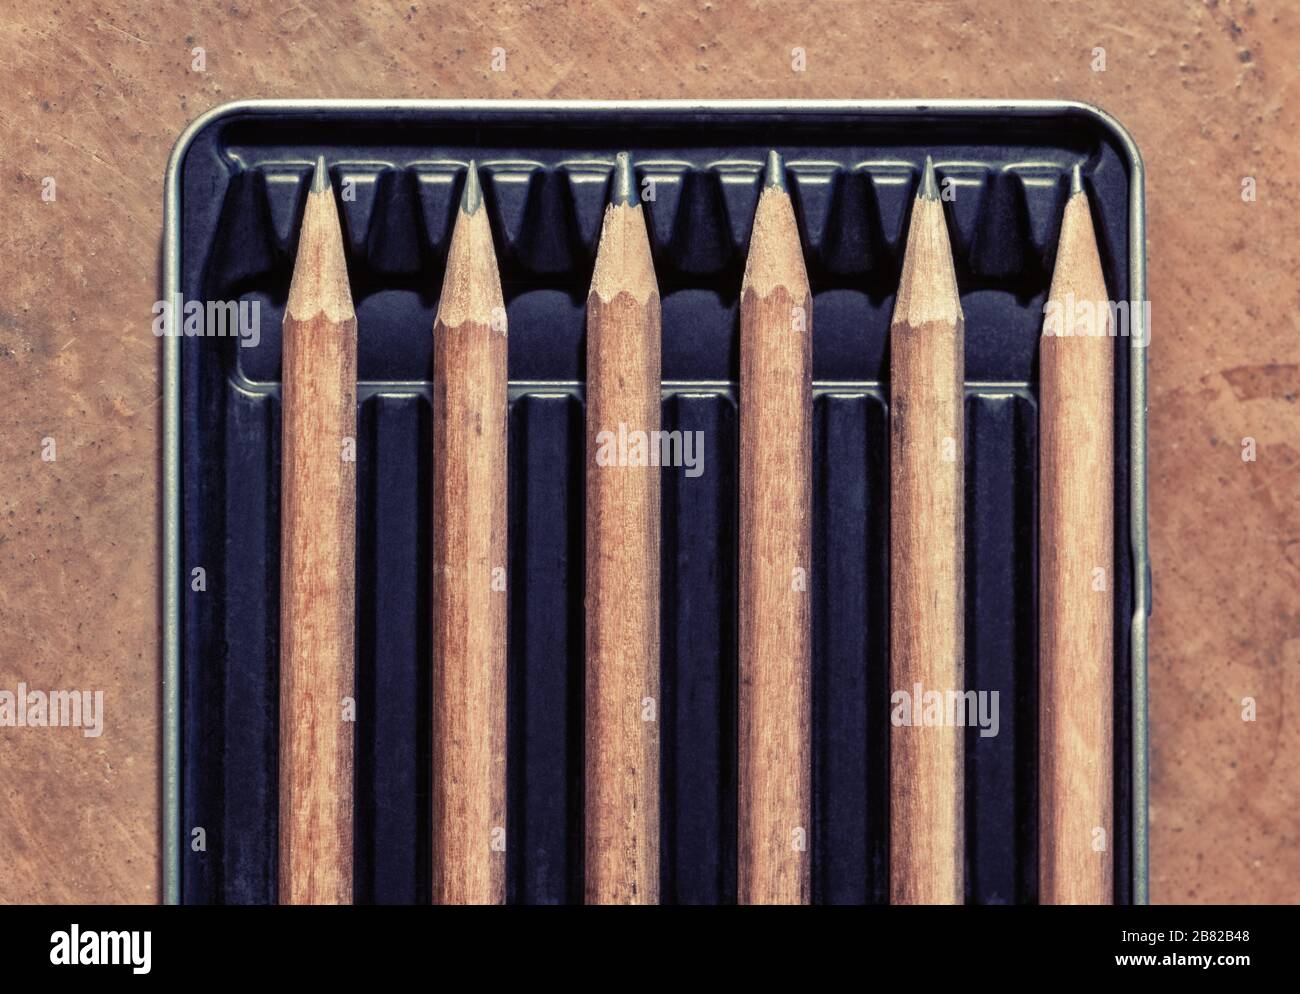 Crayons en bois dans une boîte, séparés par un espace vide. Image conceptuelle pour l'éloignement social. Banque D'Images